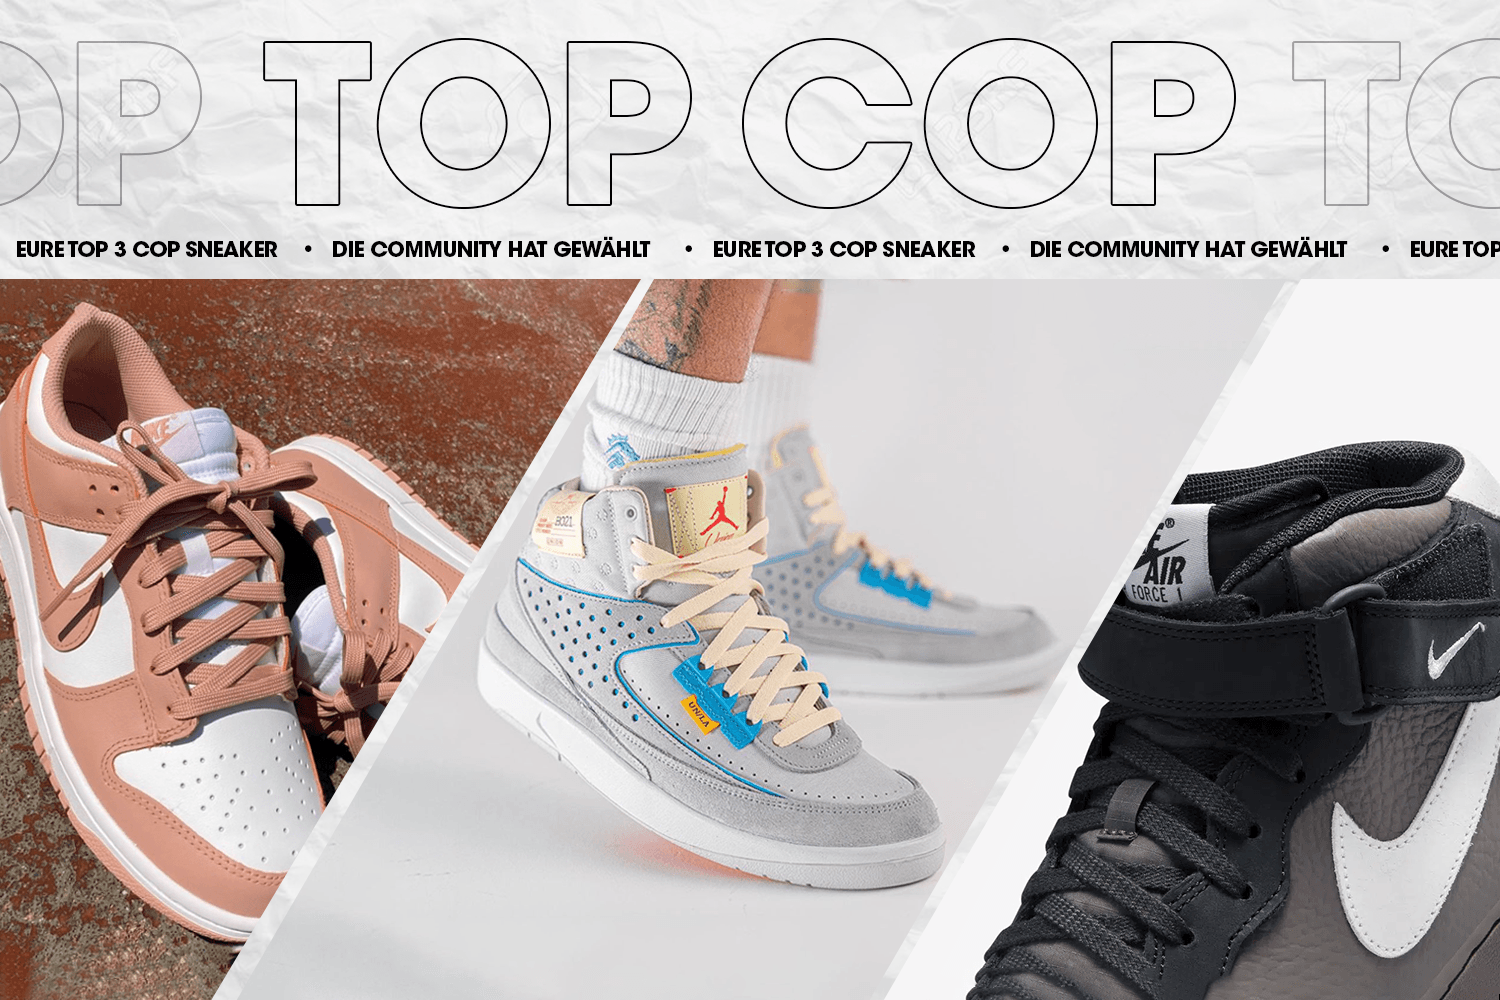 Die Community hat gewählt: Eure Top 3 Cop Sneaker Woche 16